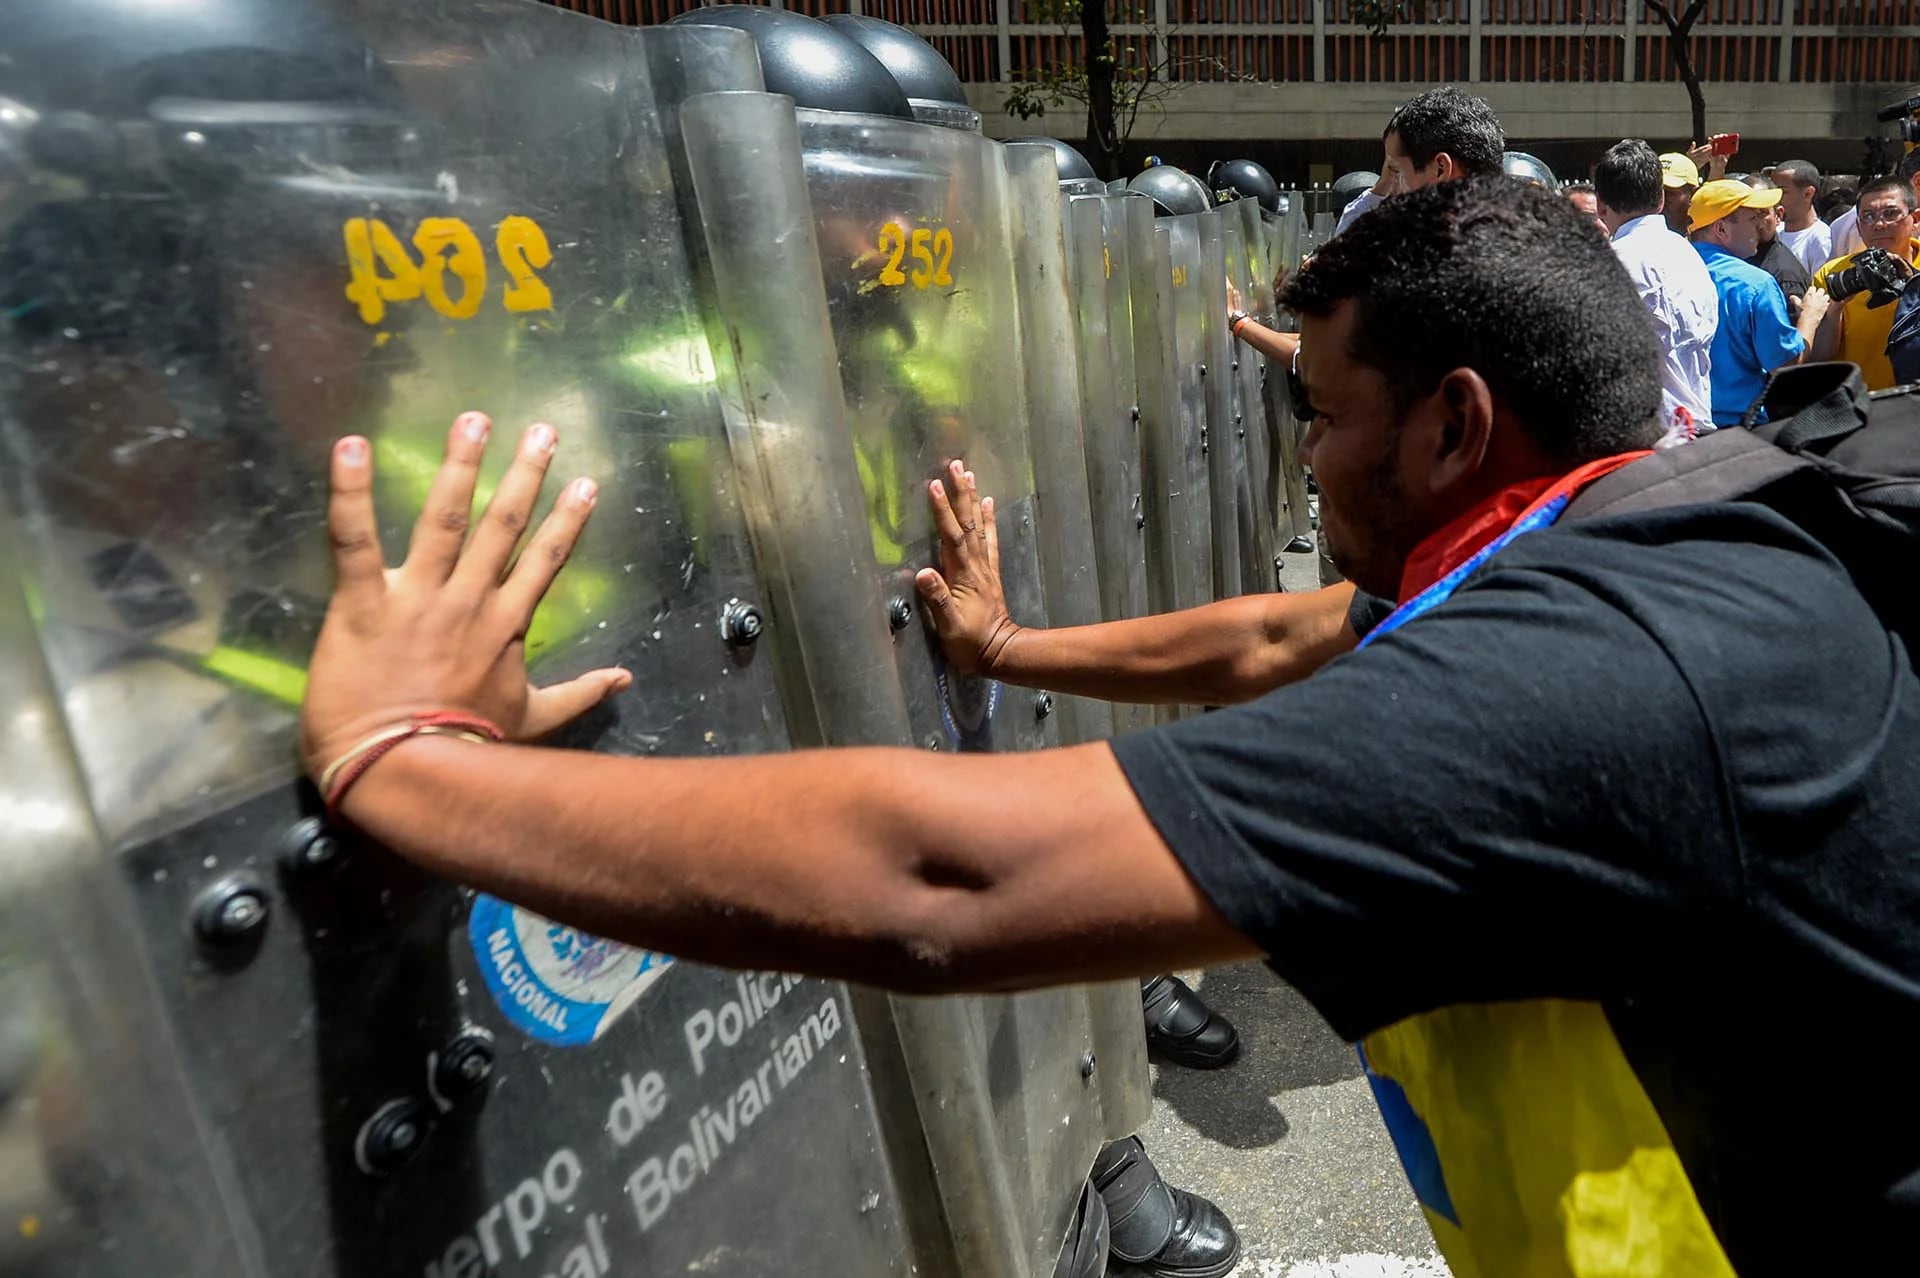 La policía militar chavista reprimía brutalmente a los opositores hace dos meses